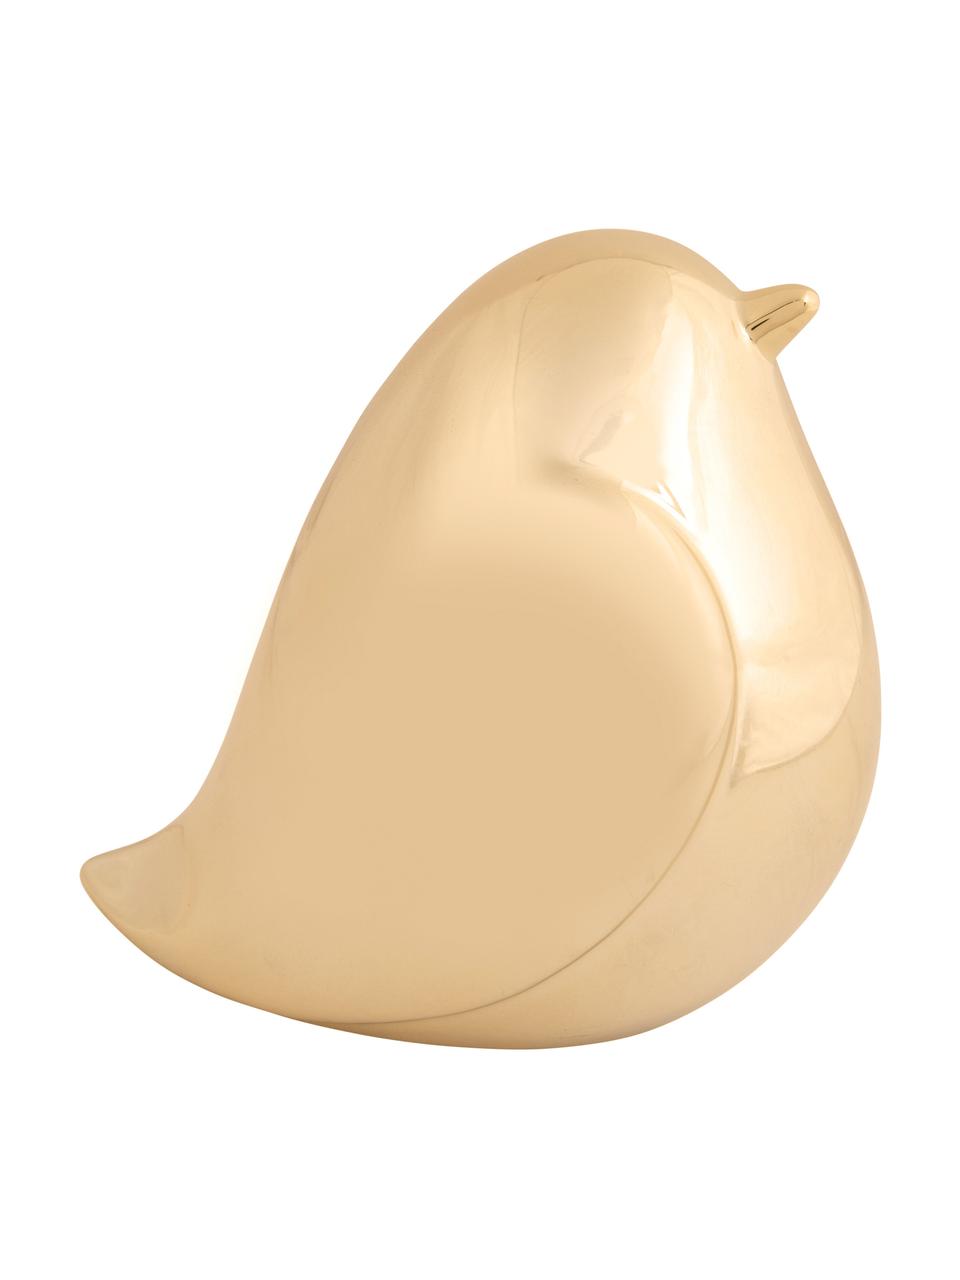 Dekoracja Fat Bird, Ceramika, Złoty, S 14 x W 14 cm